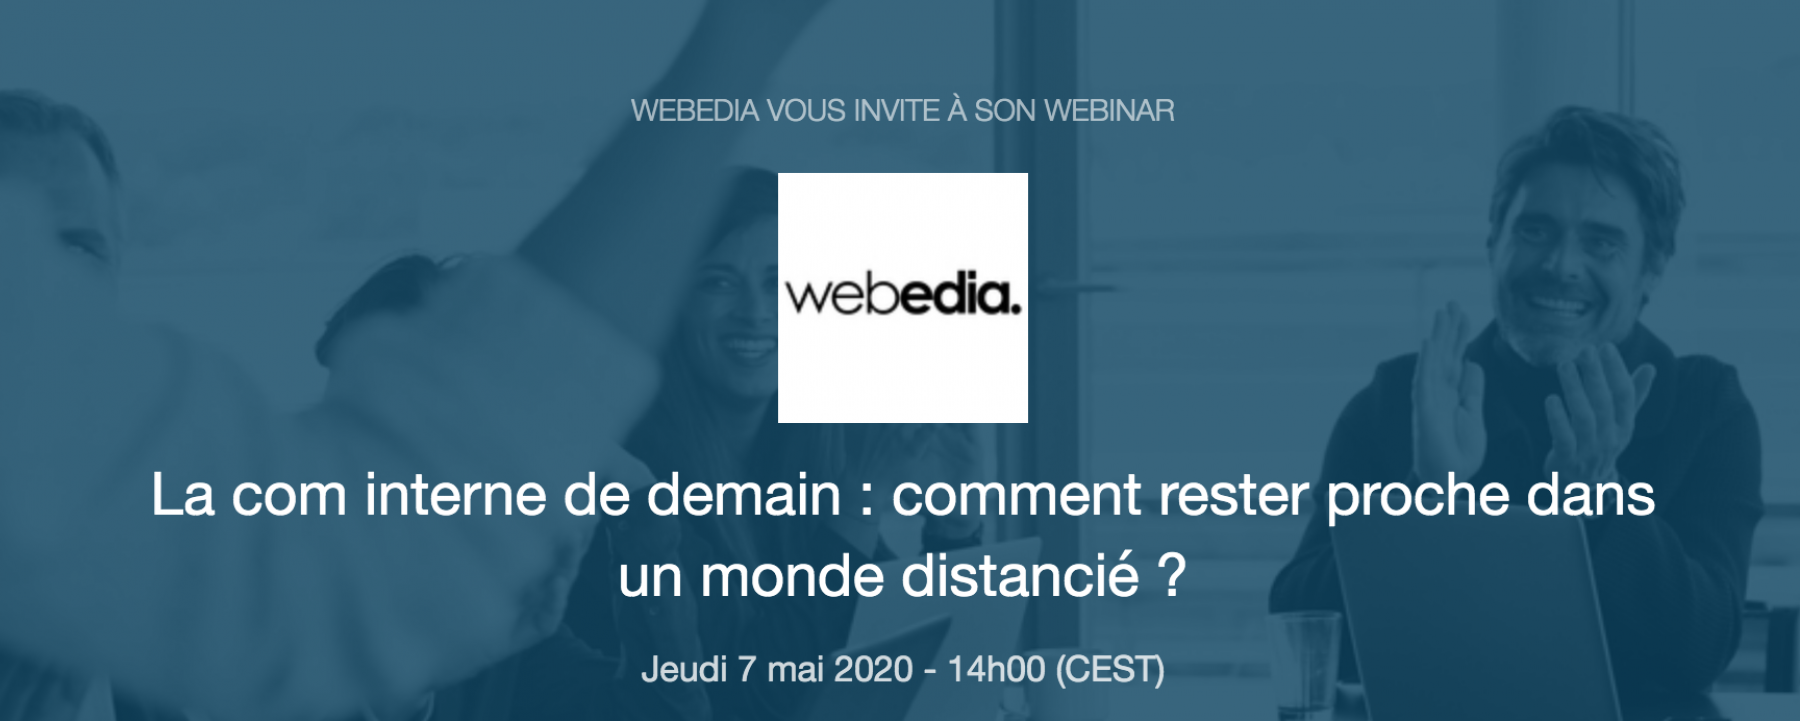 Webinar La com interne de demain : comment rester proche dans un monde distancié ?, le 7 mai 2020, organisé par Webedia 